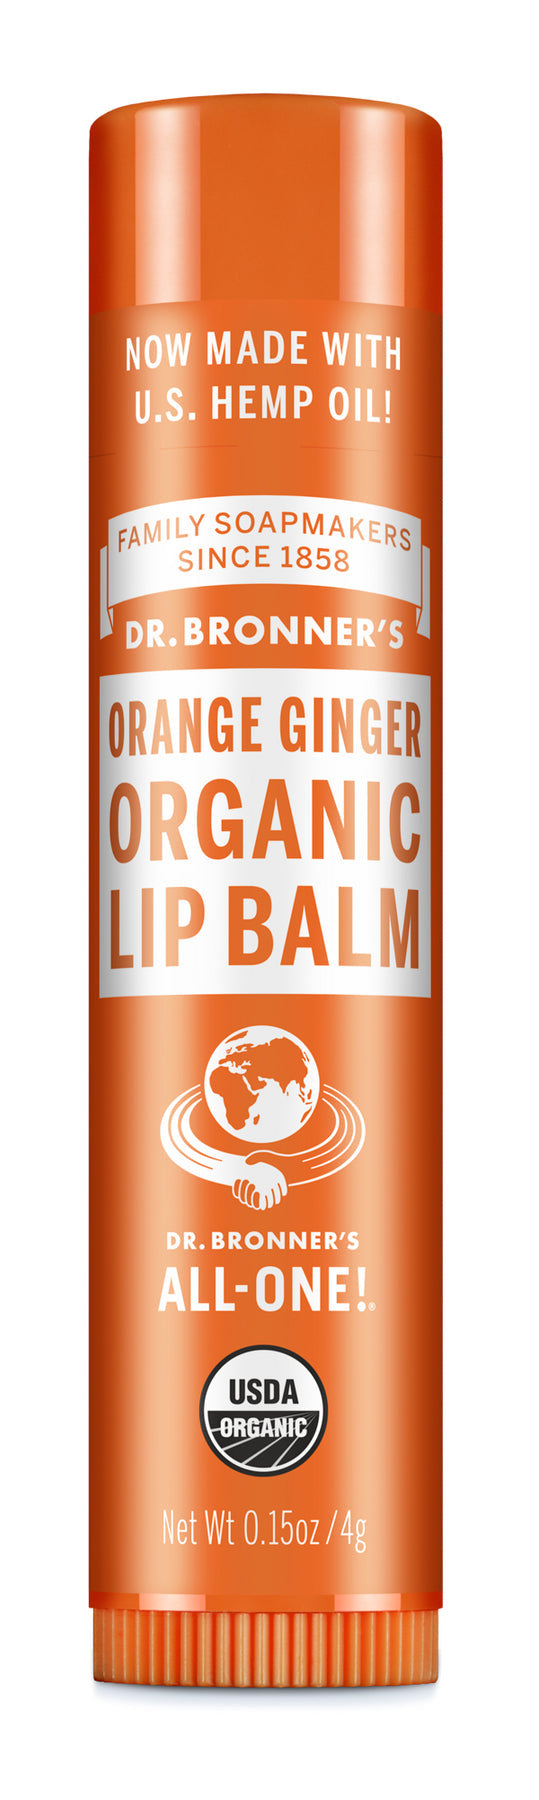 Dr Bronner's Orange Ginger Organic Lip Balm 4g